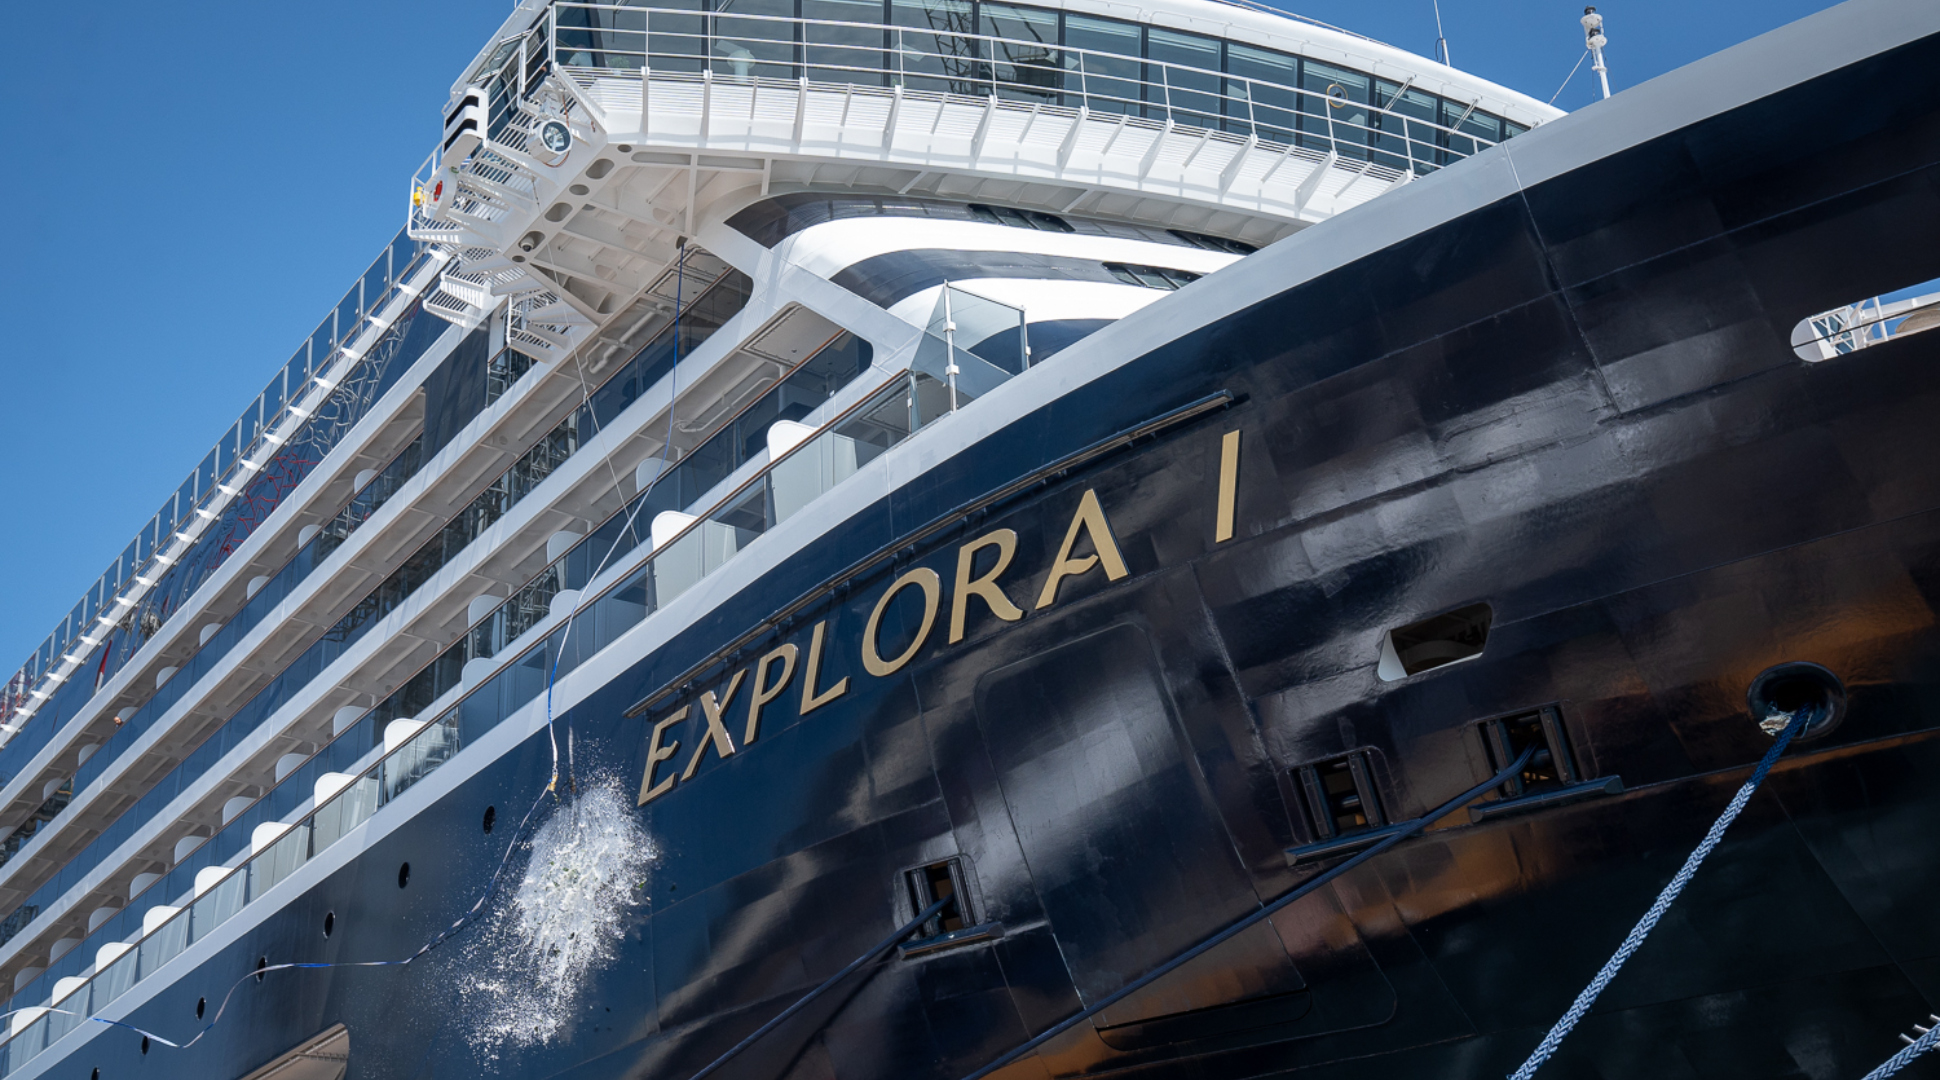 Consegnata Explora I: la prima nave del nuovo marchio di lusso di Msc